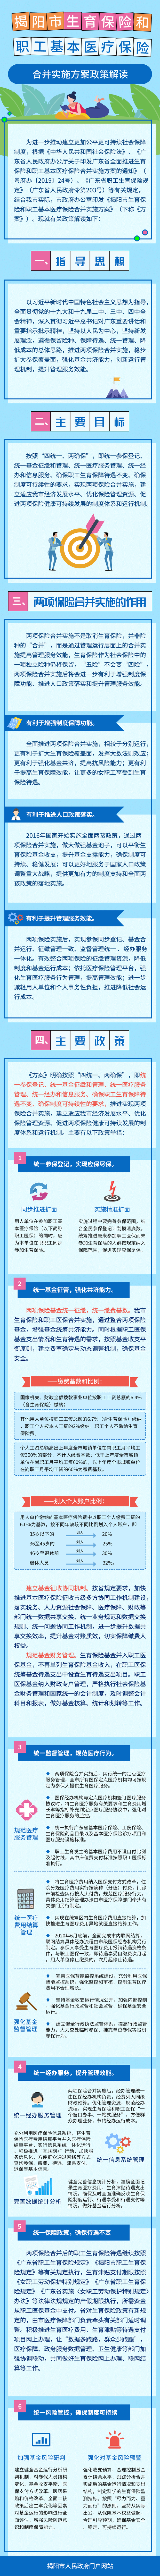 揭阳市生育保险和职工基本医疗保险合并实施方案政策解读-定稿.png